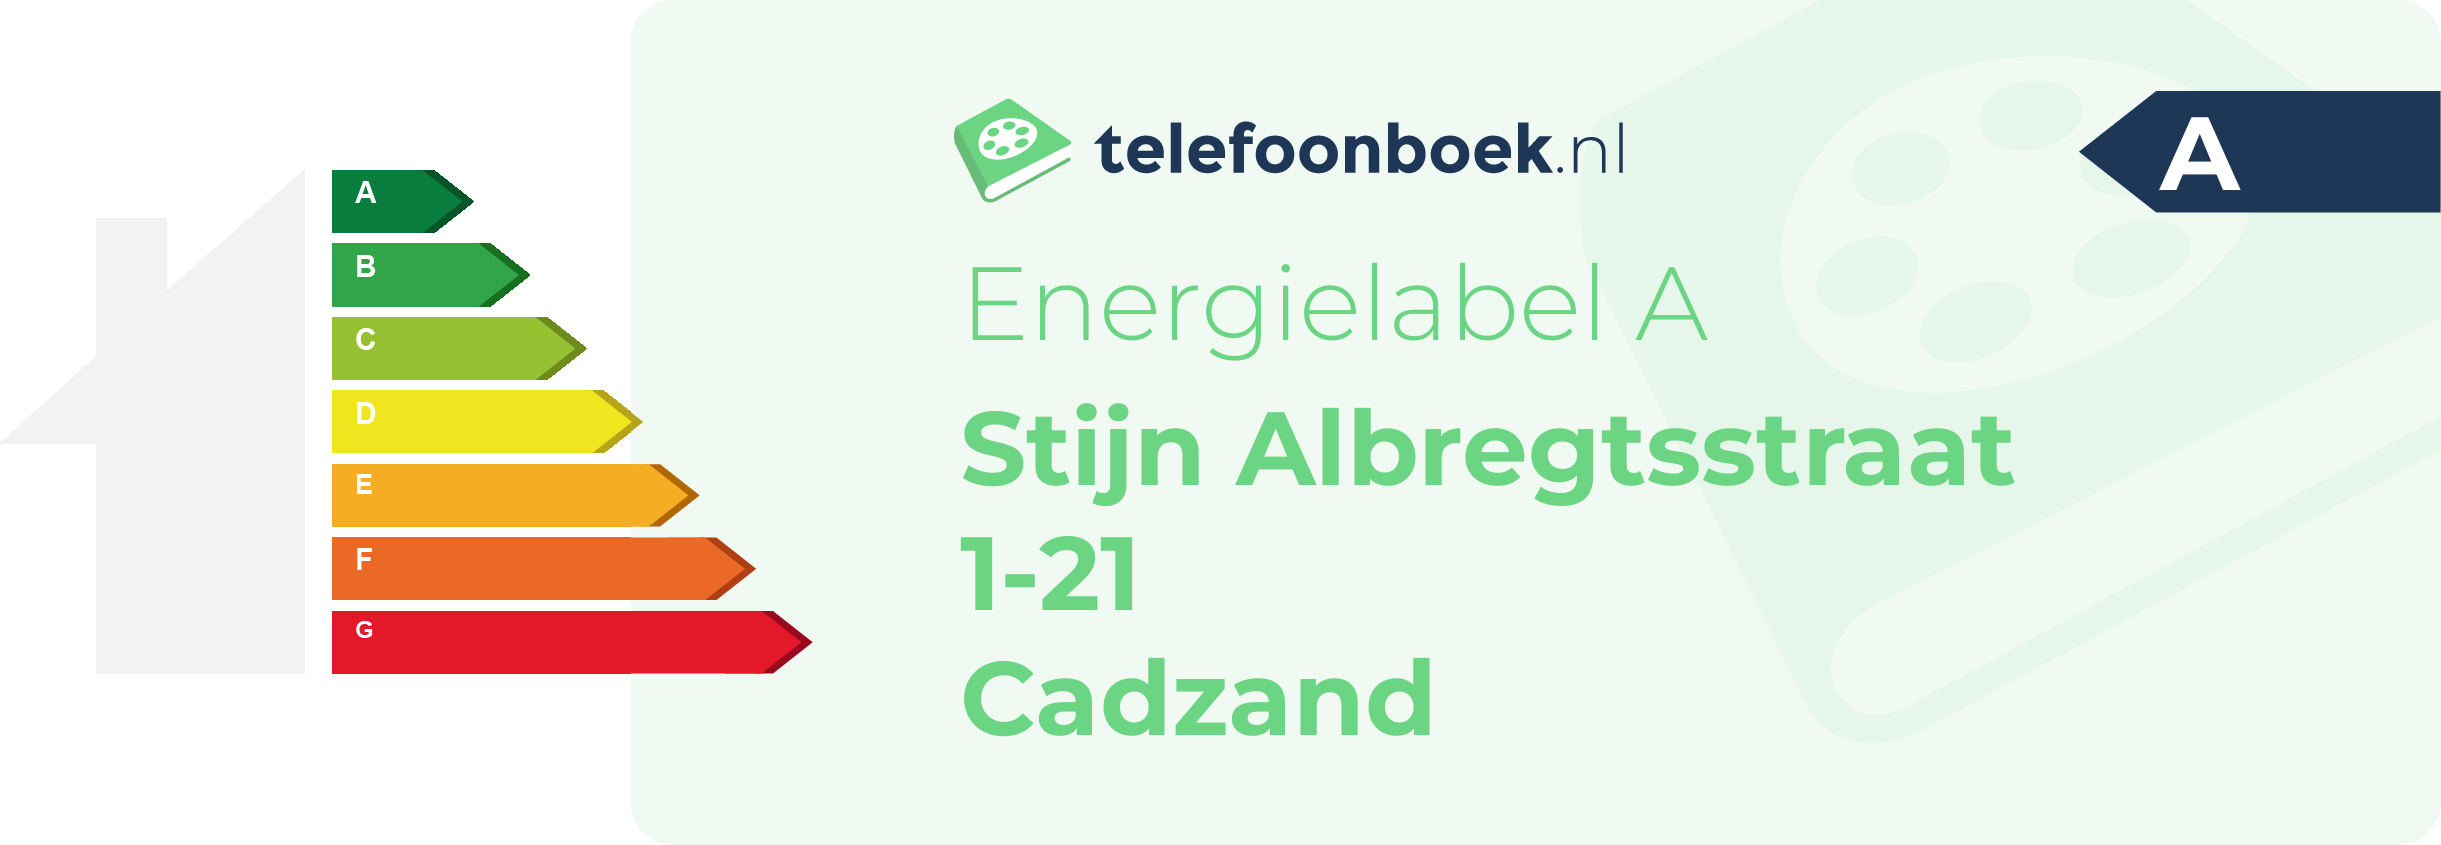 Energielabel Stijn Albregtsstraat 1-21 Cadzand